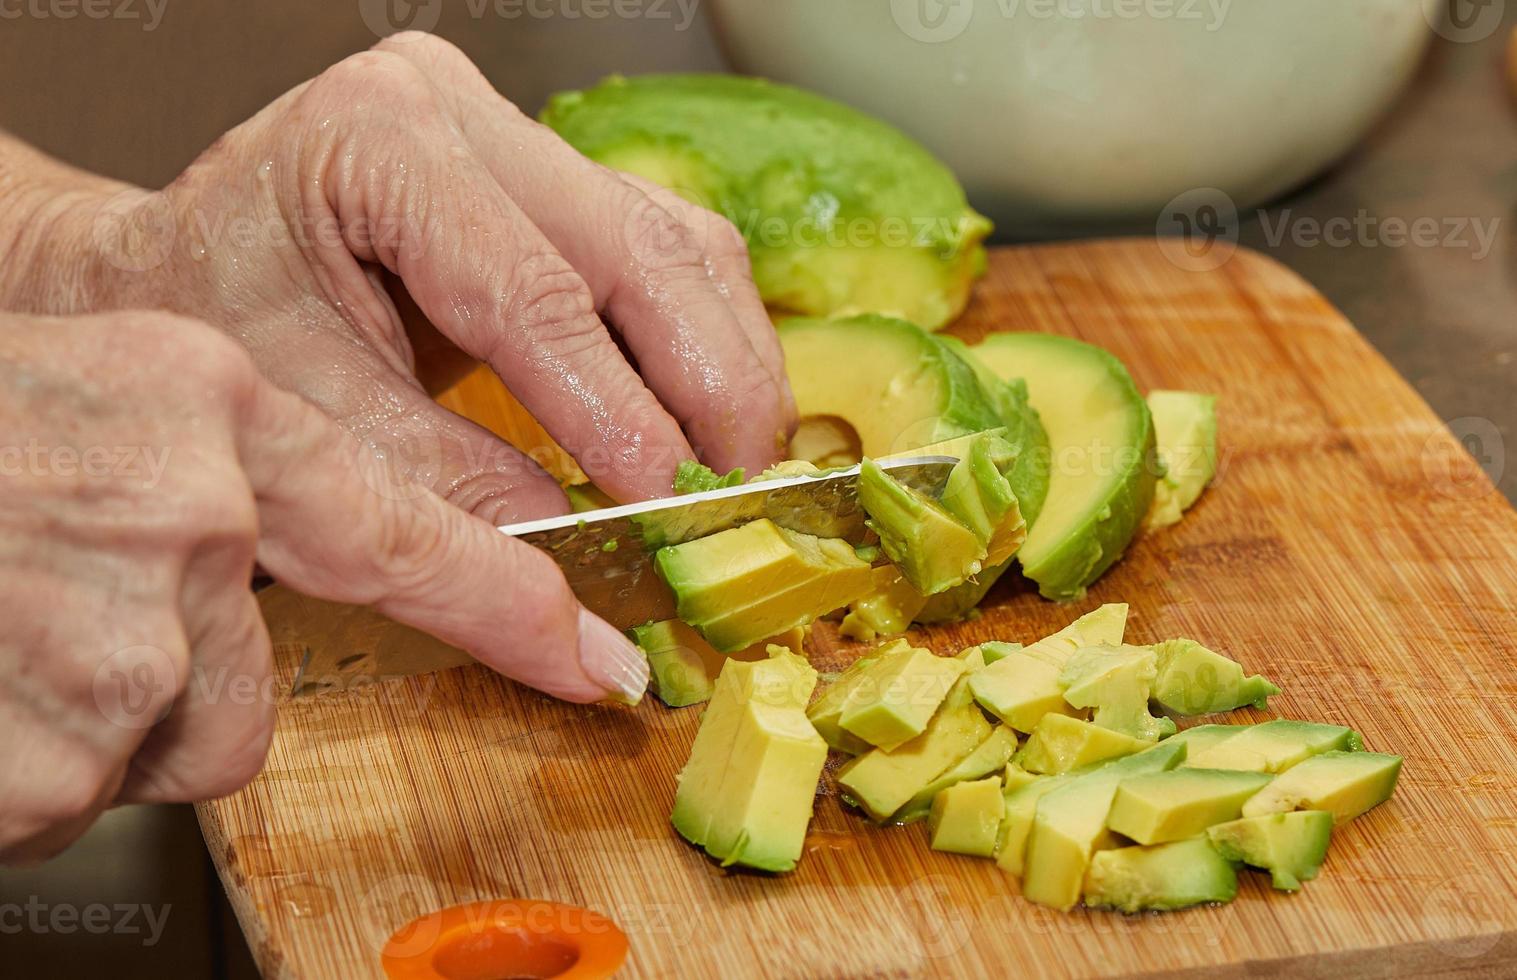 cozinheiro corta abacate maduro em fatias para fazer salada foto